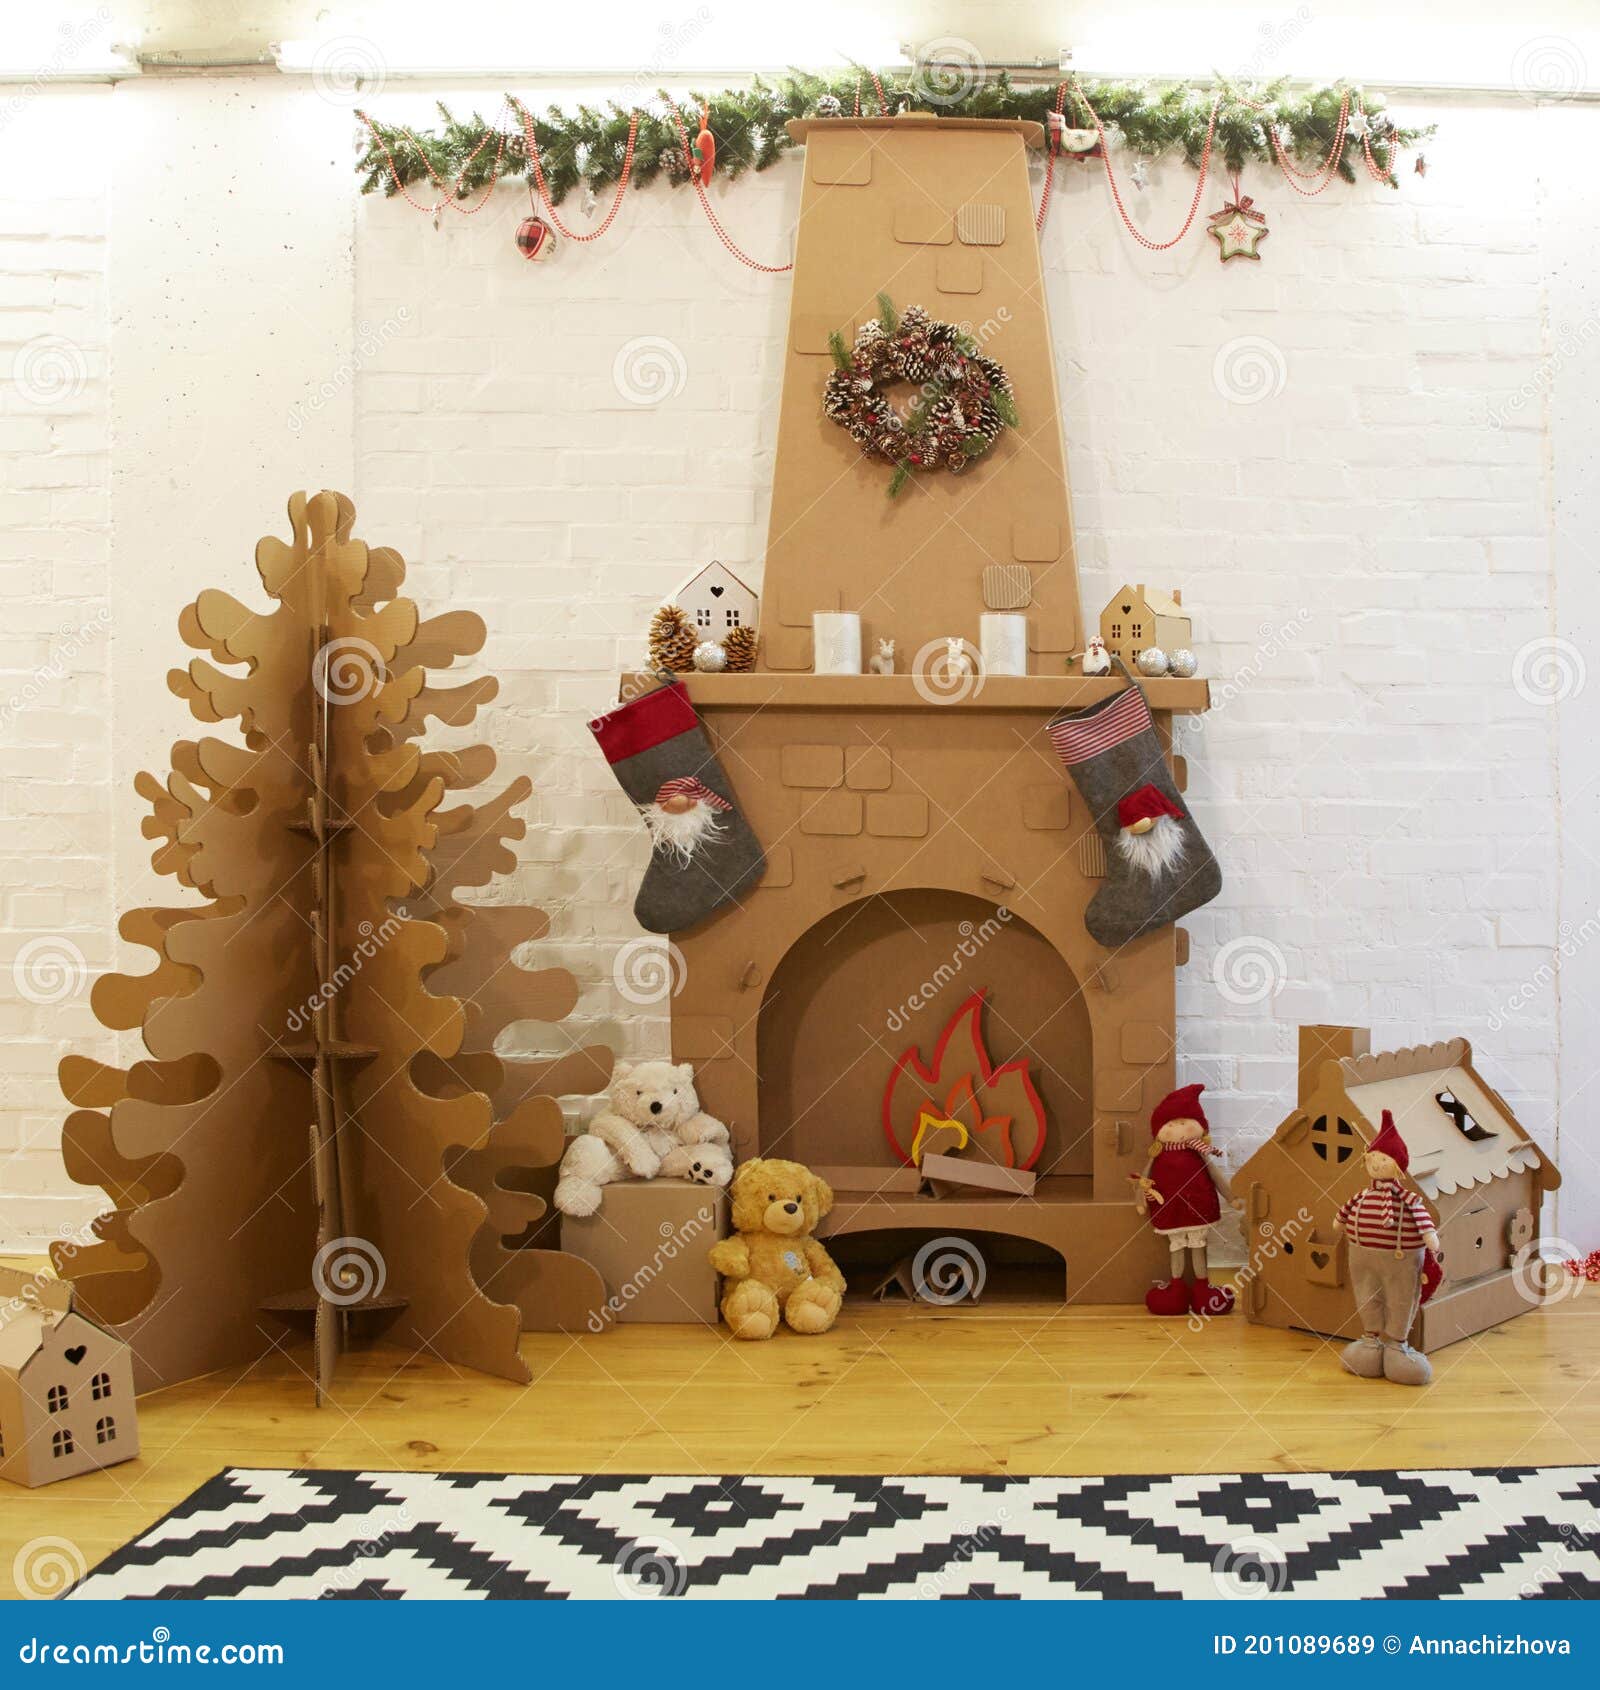 Decoração Caseira De Natal De Cartolina Com Presentes De árvores E Lareira.  Imagem de Stock - Imagem de projeto, esfera: 201089689